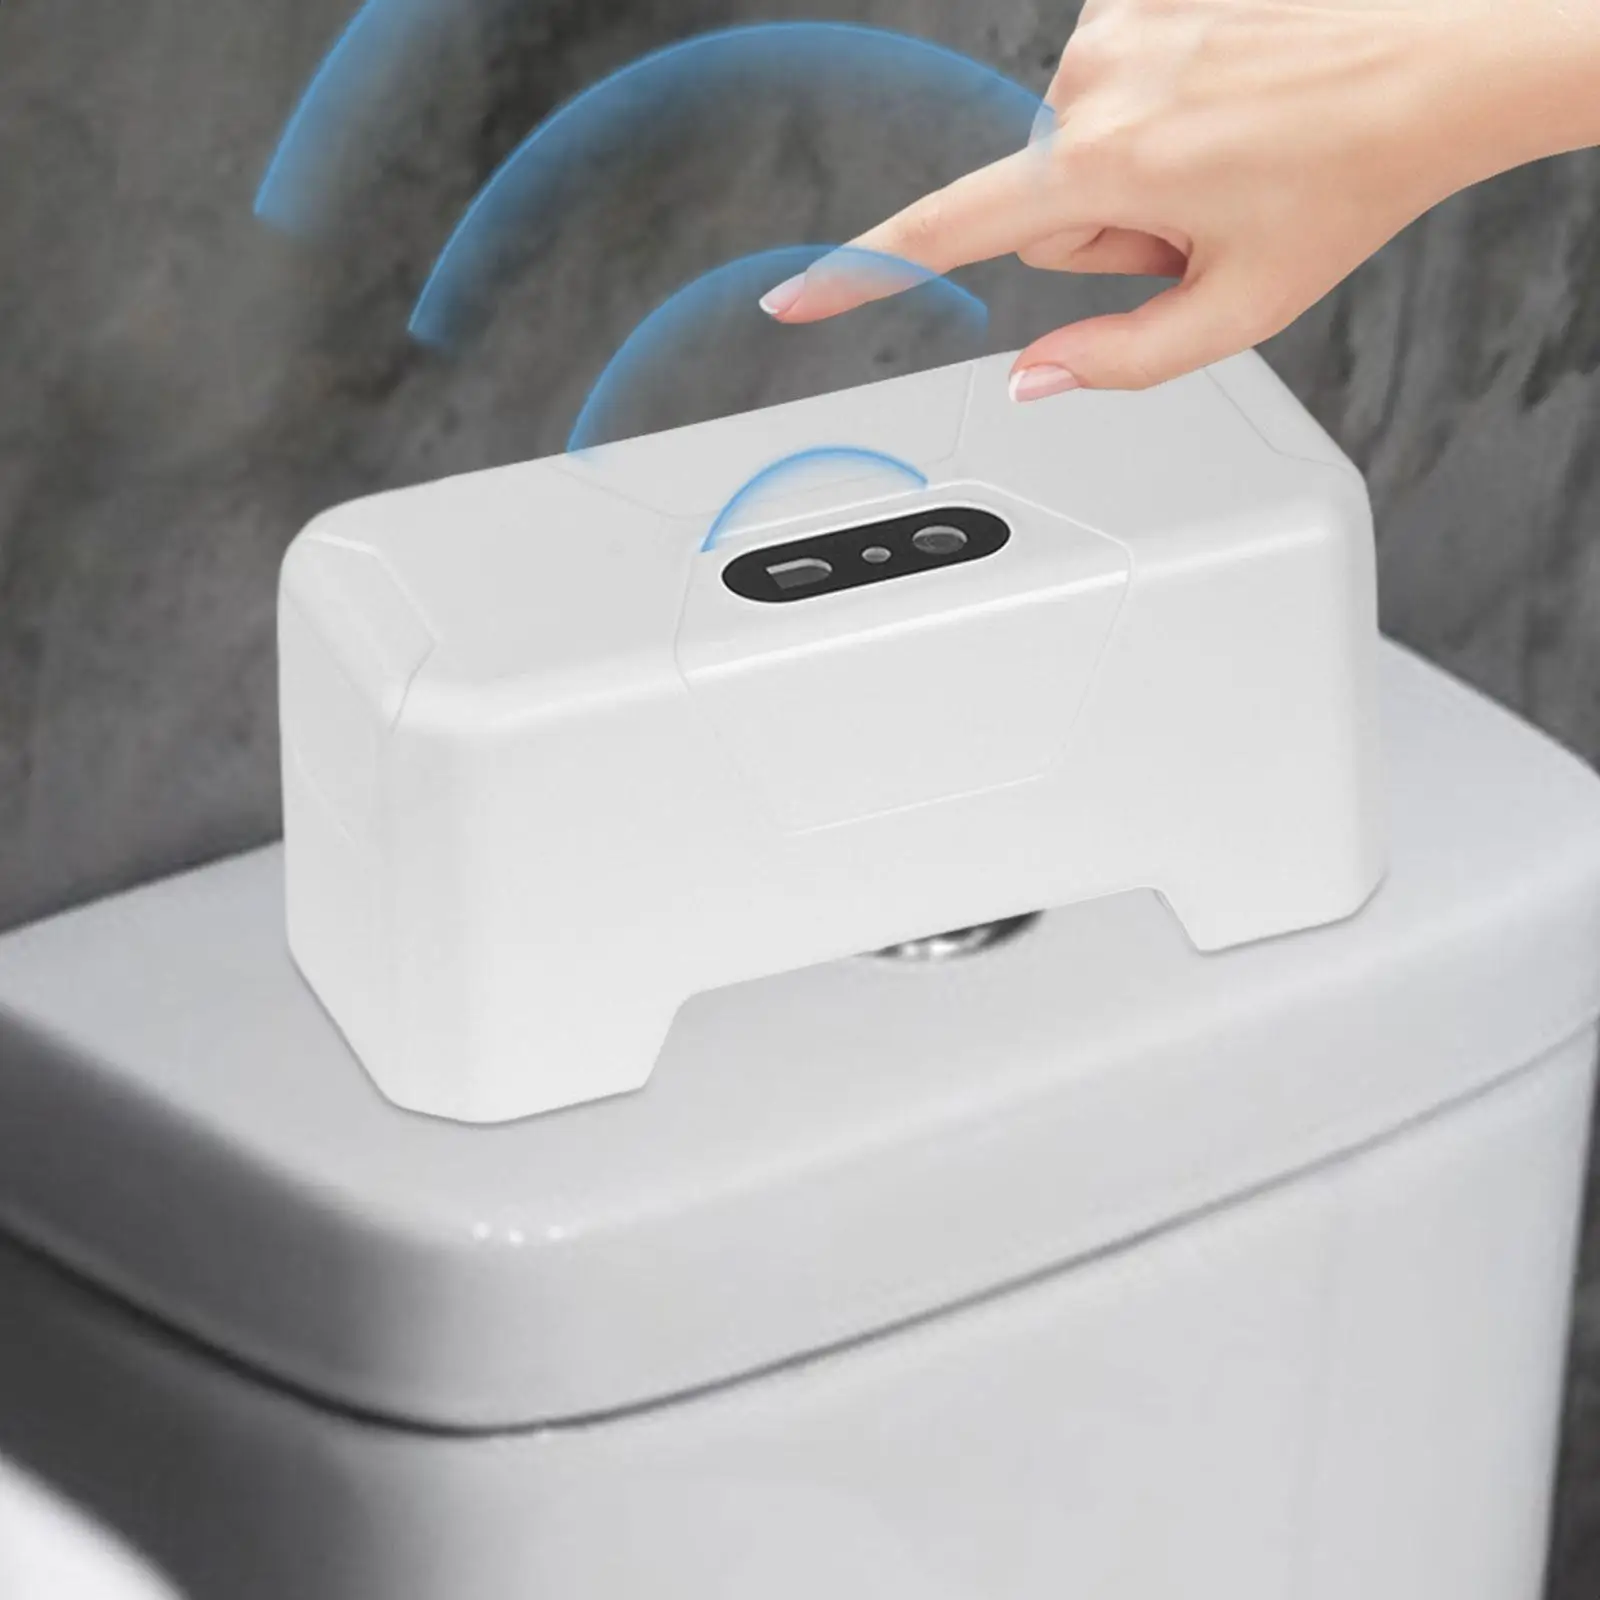 Toilet Flusher Toilet Flush Button Smart Induction Toilet Flushing Sens Hands Free Touchless Toilet Flush for Household Bathroom